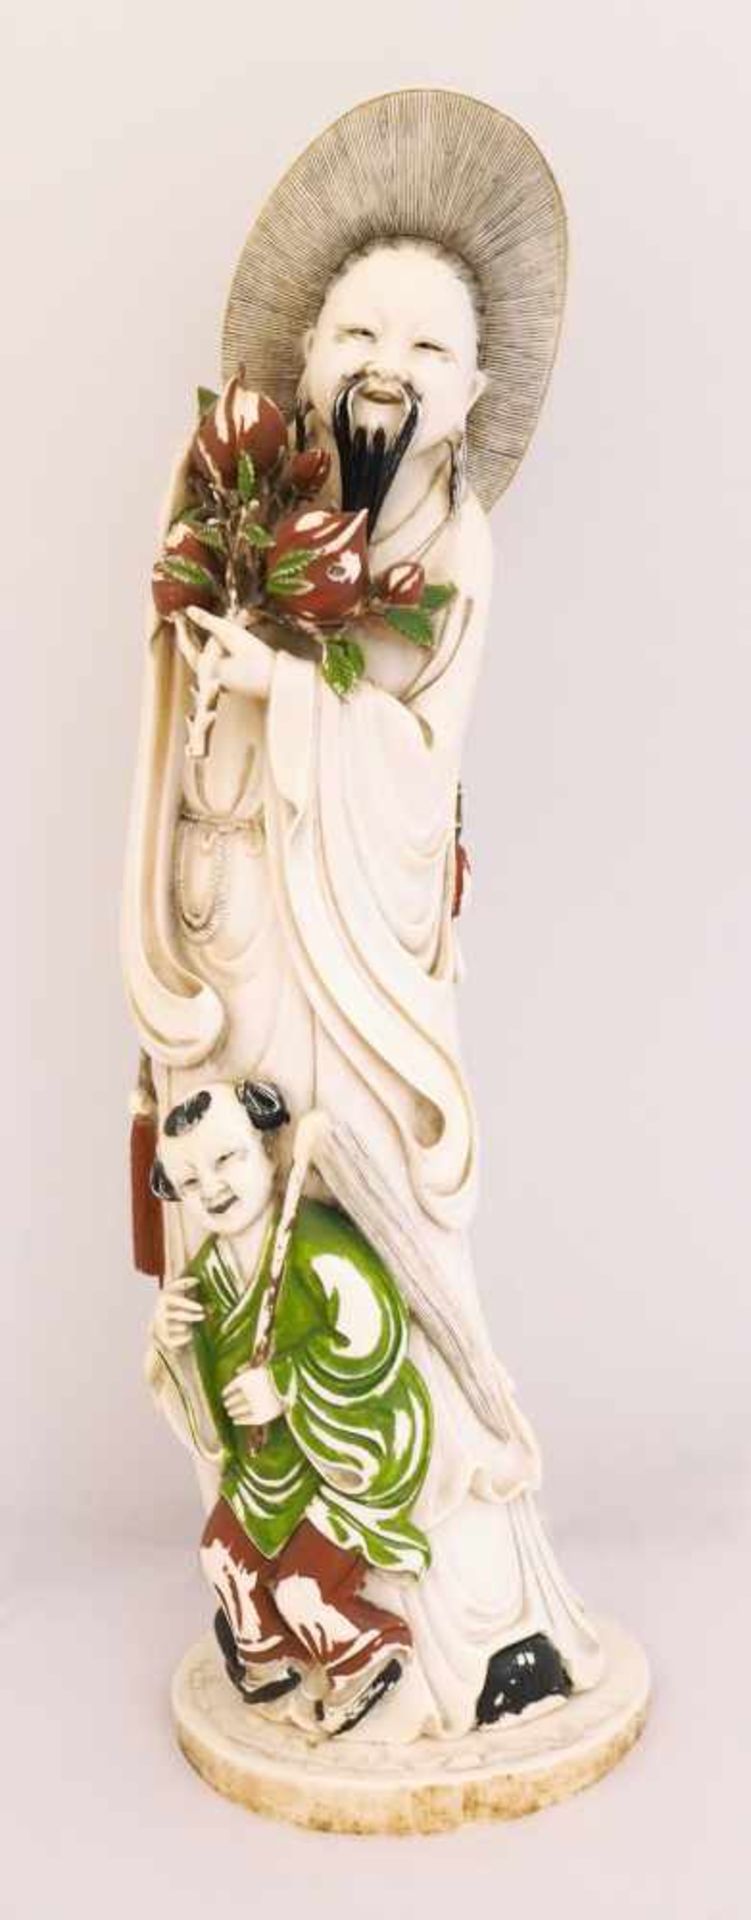 Figur Elfenbein geschnitzt z.T. bemaltHöhe ca. 42cm, min. besch. Farbverluste, Teile lose, vor 1970,